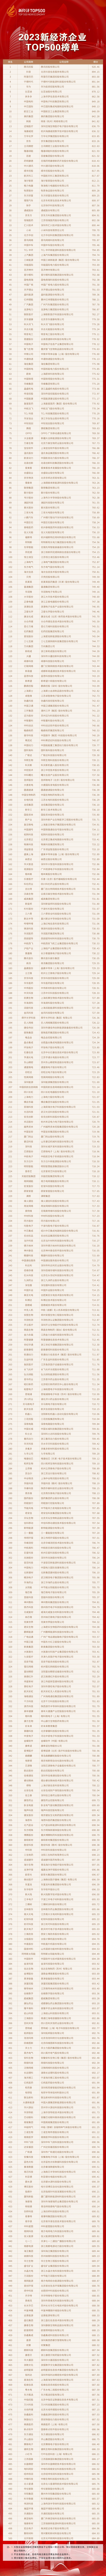 2023新经济企业TOP500发布 腾讯连续三年蝉联桂冠-天天热点评